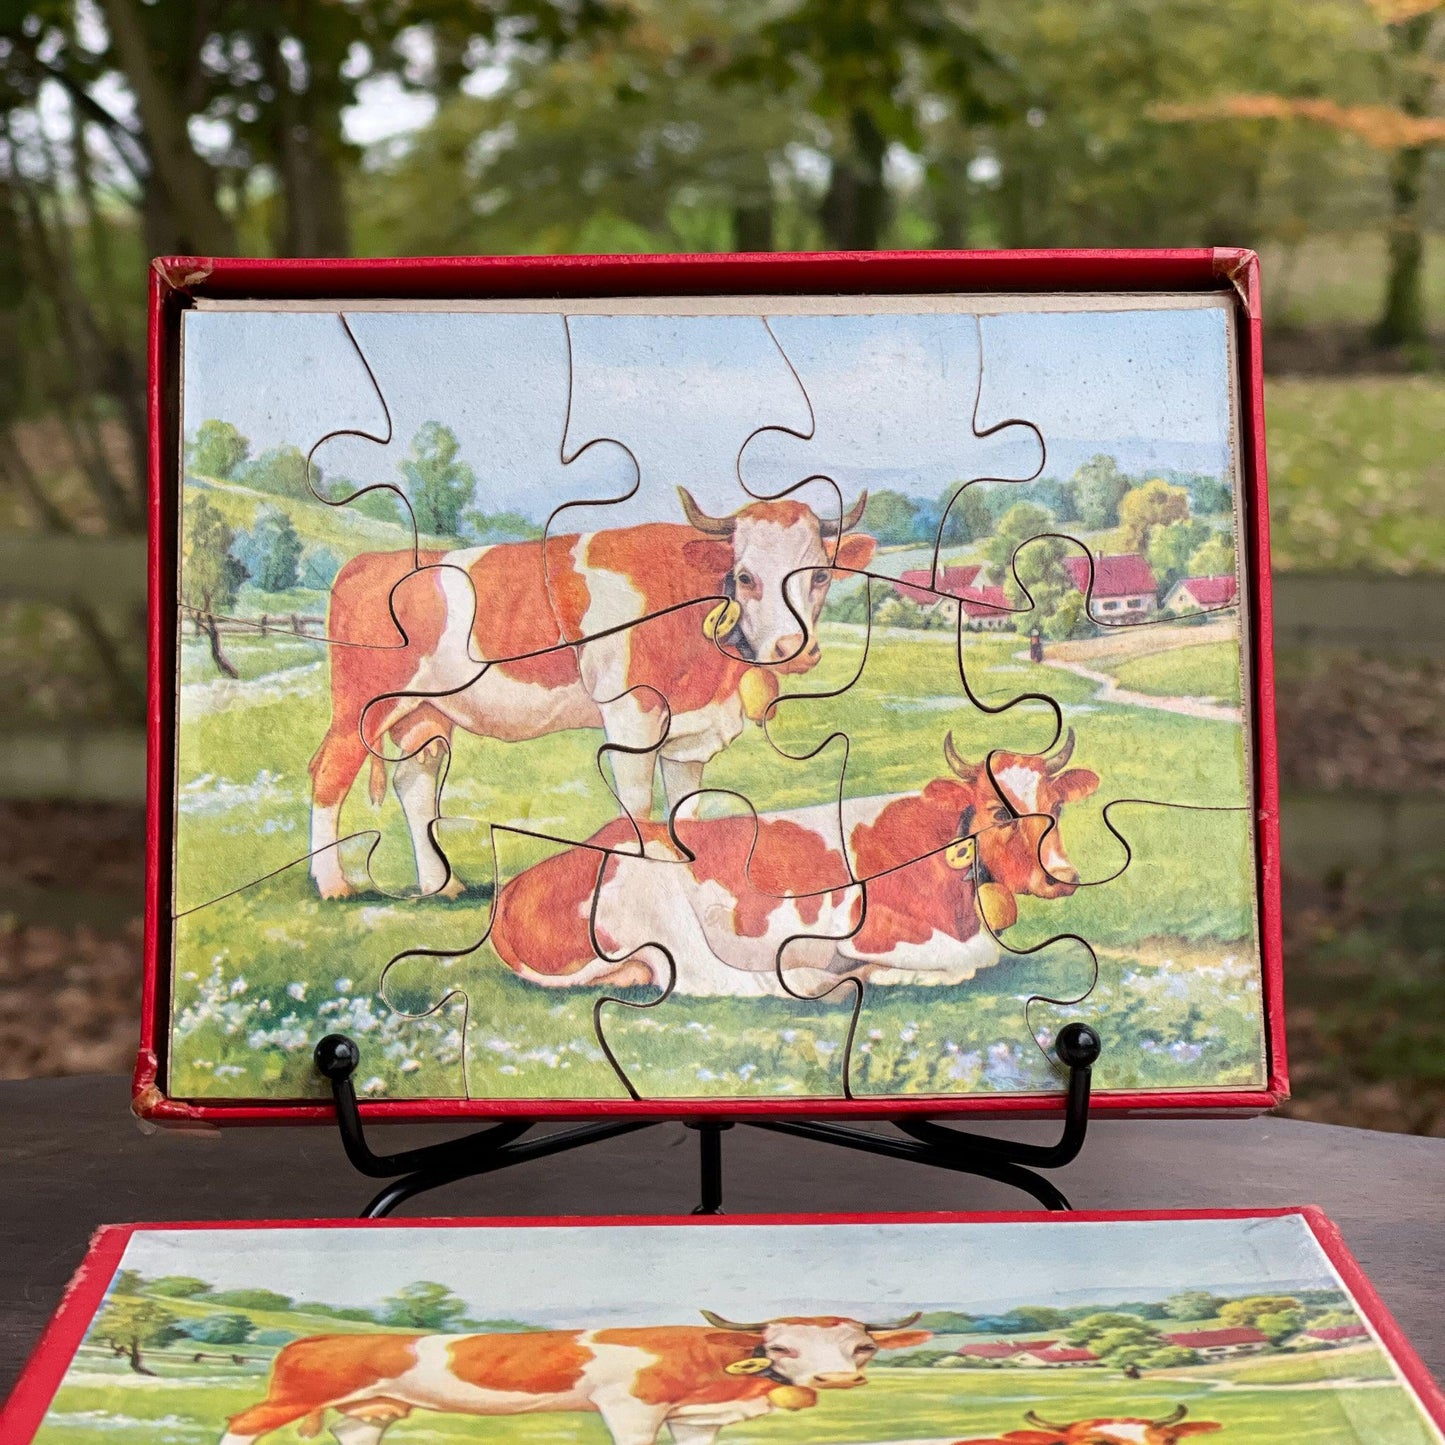 Vintage jigsaw puzzel met twee koeien - Bamestra Curiosa